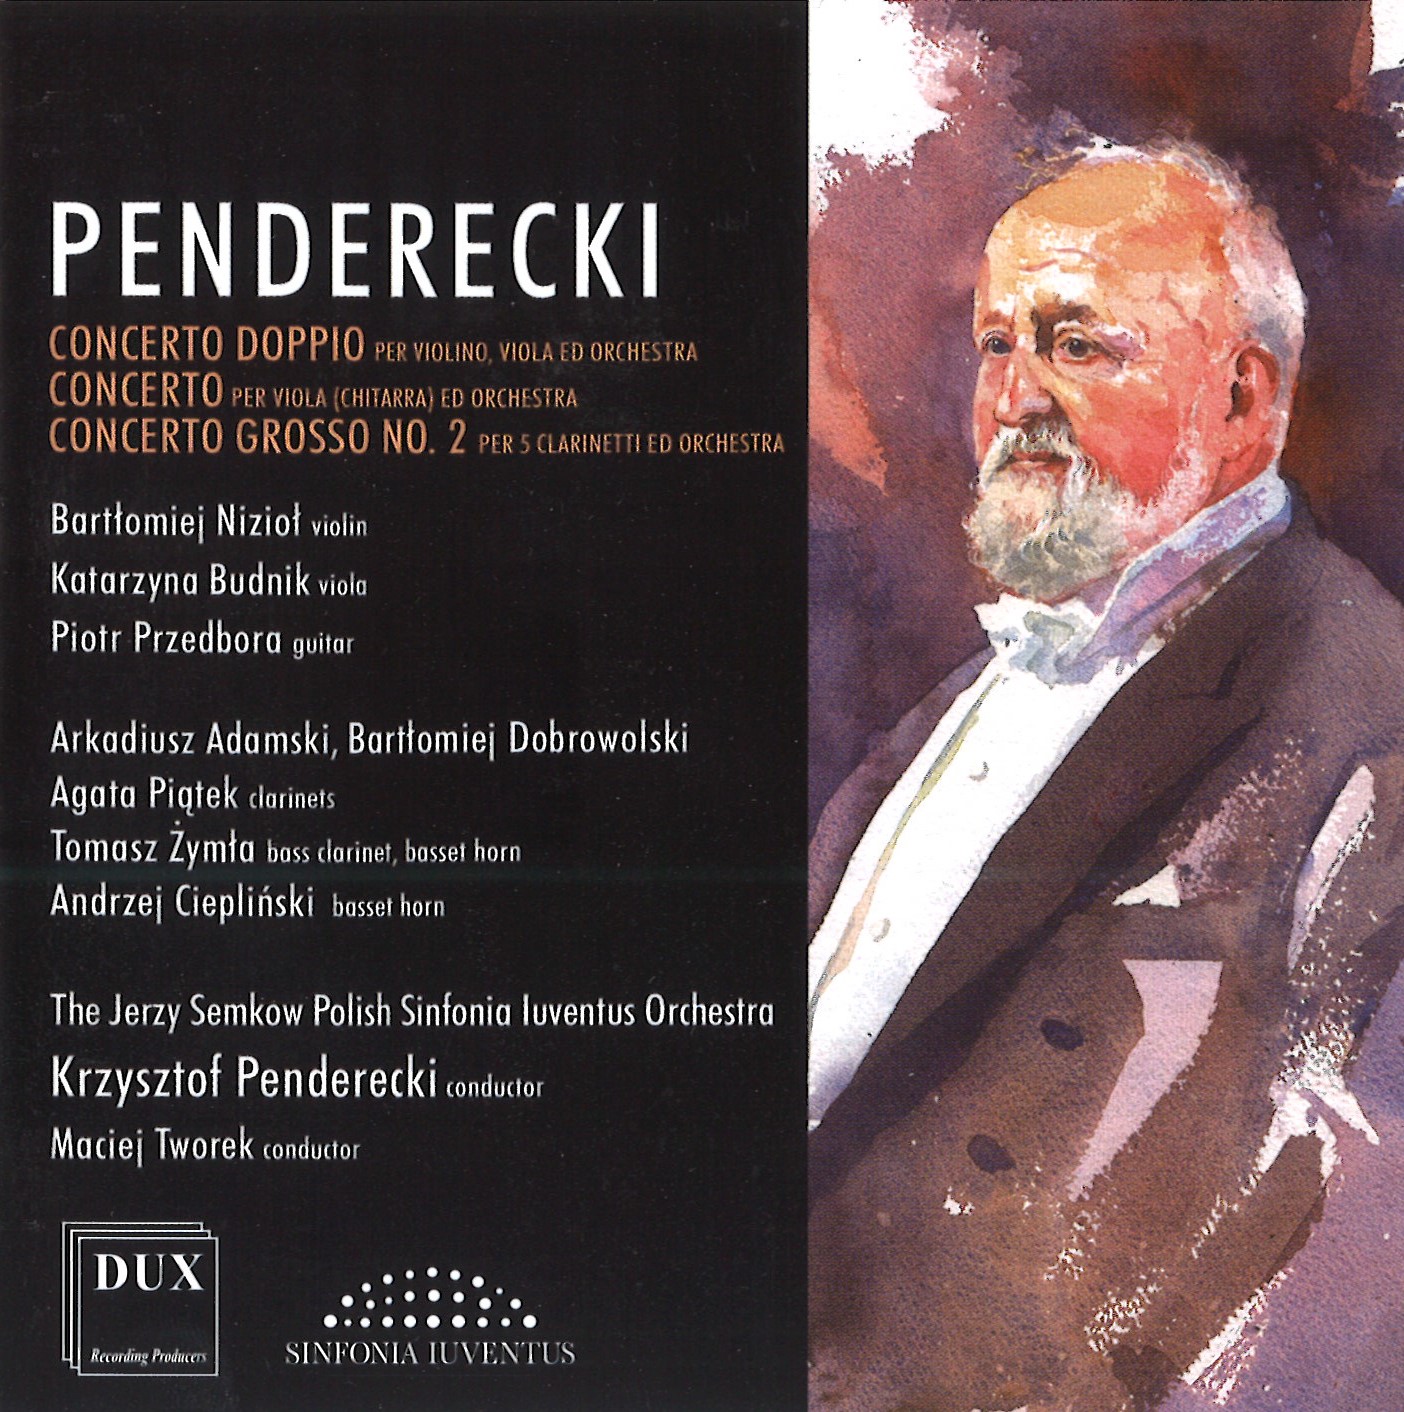 okładka płyty Penderecki Concertos